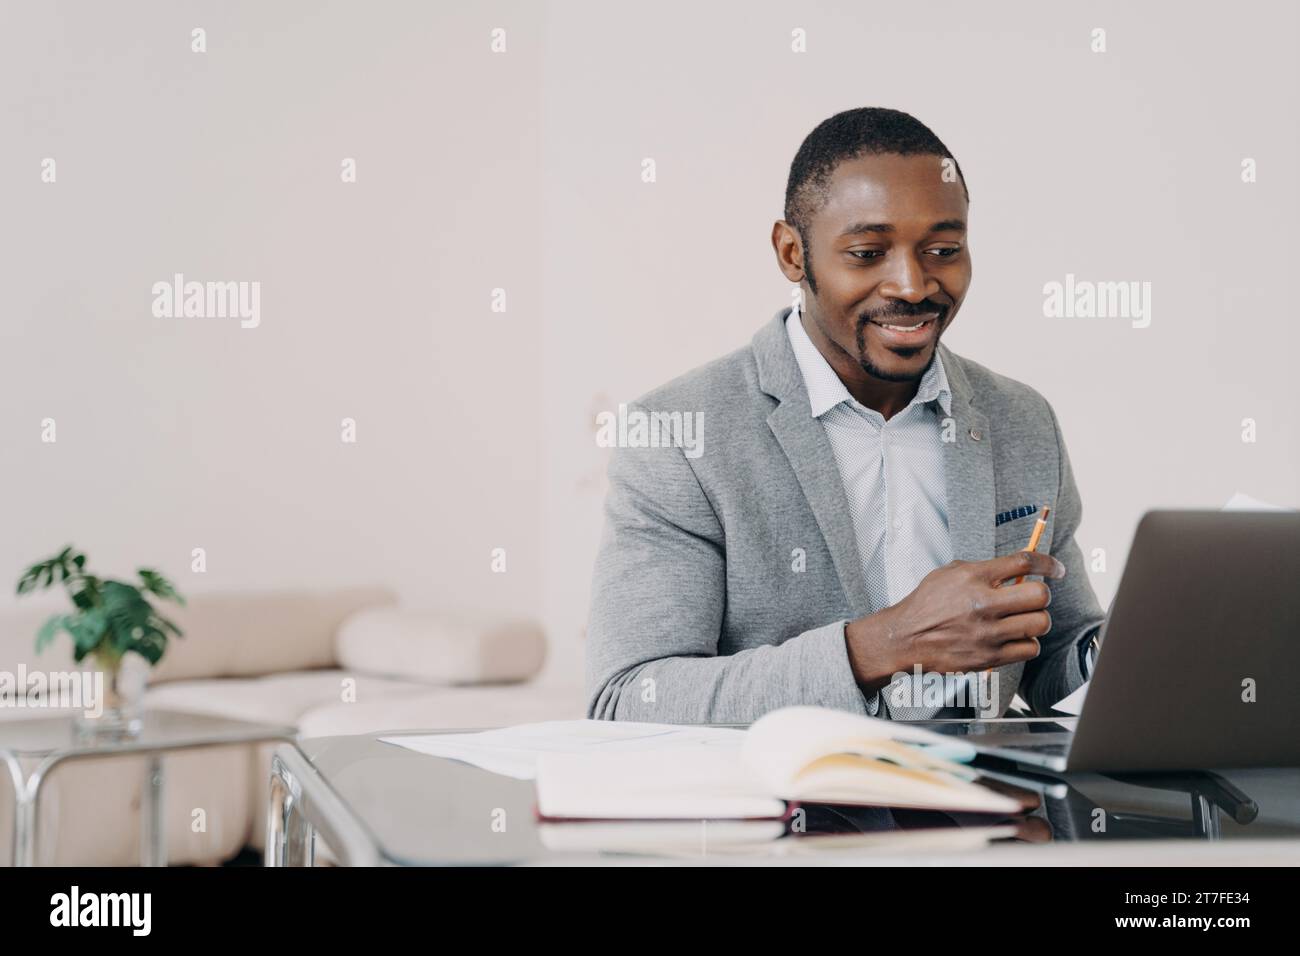 Professionnel Noir homme travaillant à l'ordinateur portable dans le bureau, concentré et souriant Banque D'Images